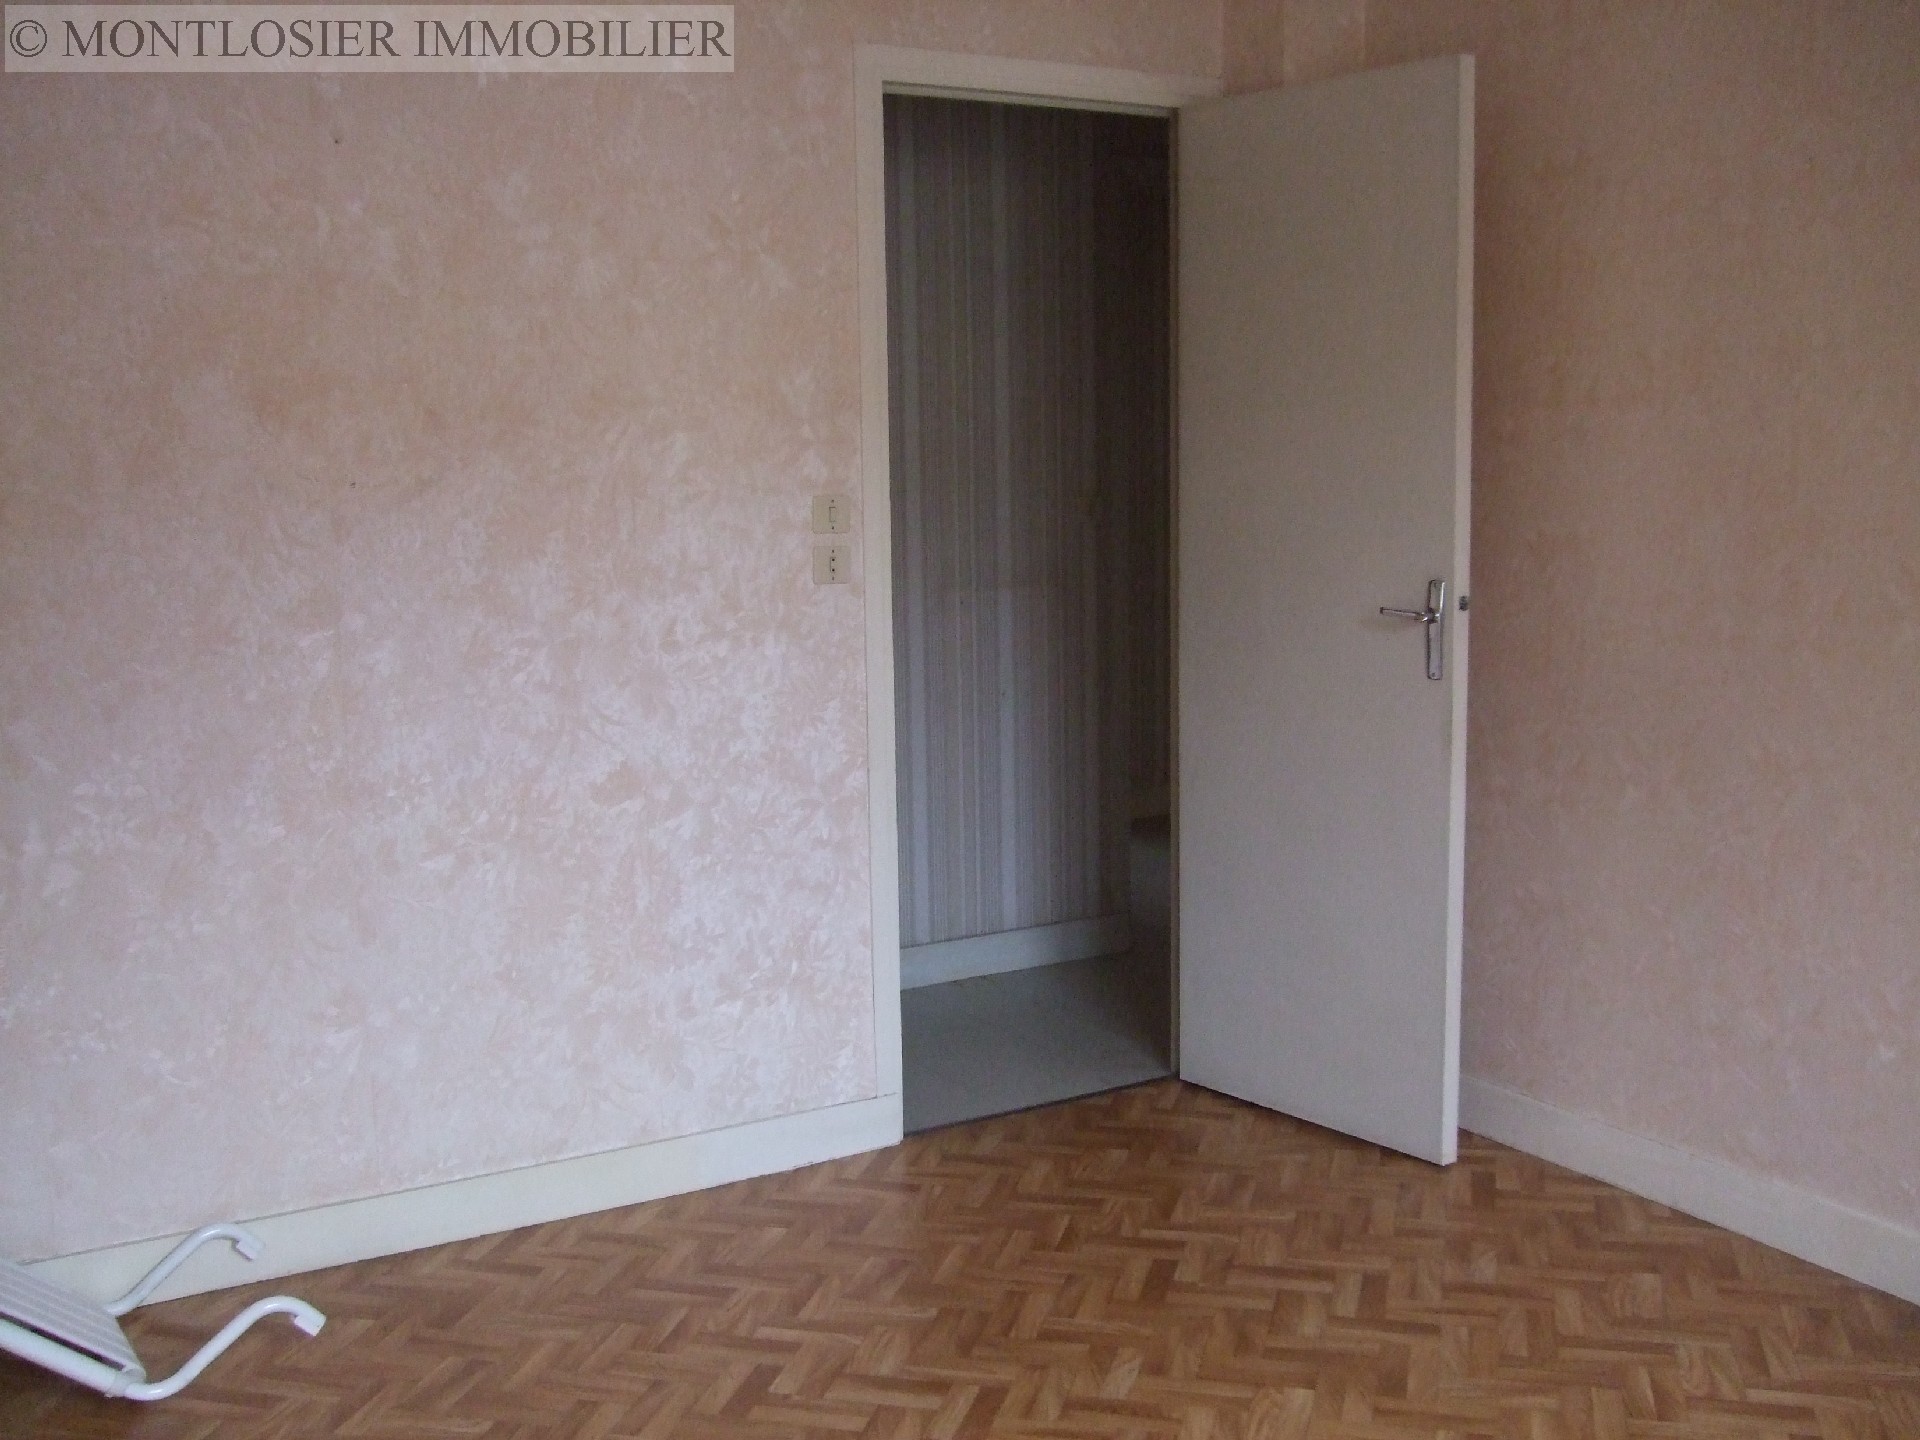 Appartement à vendre, CLERMONT-FERRAND, 63,56 m², 3 pièces